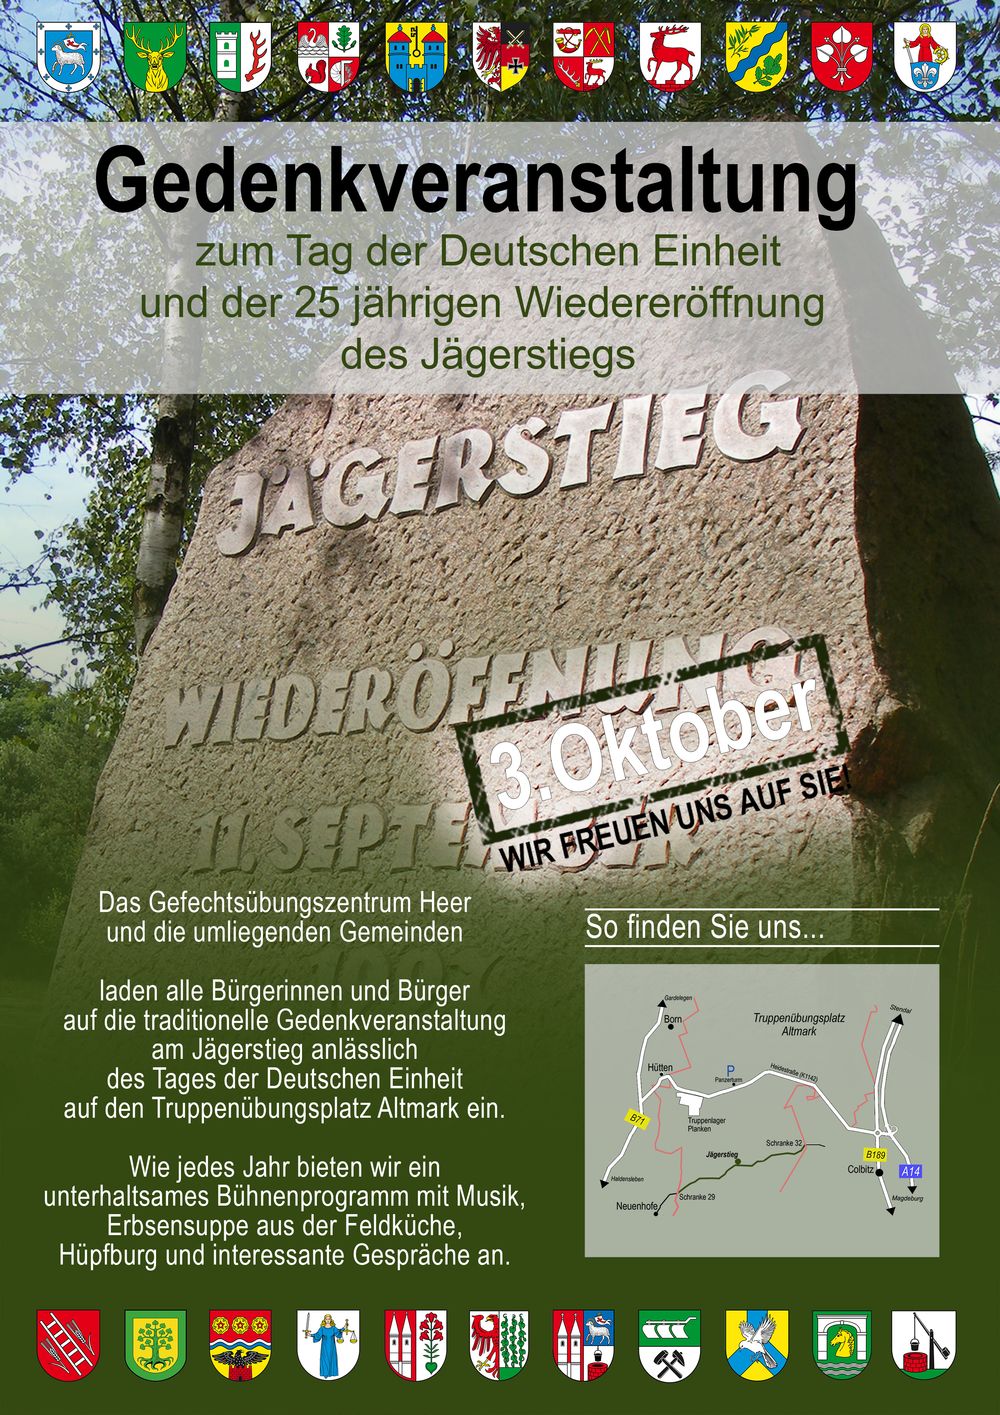 Das offfizielle Plakat der Bundeswehr zum Jubiläum 25-ster Jahrestag der Wiedereröffnung des Jägerstieges in der Colbitz-Letzlinger Heide.